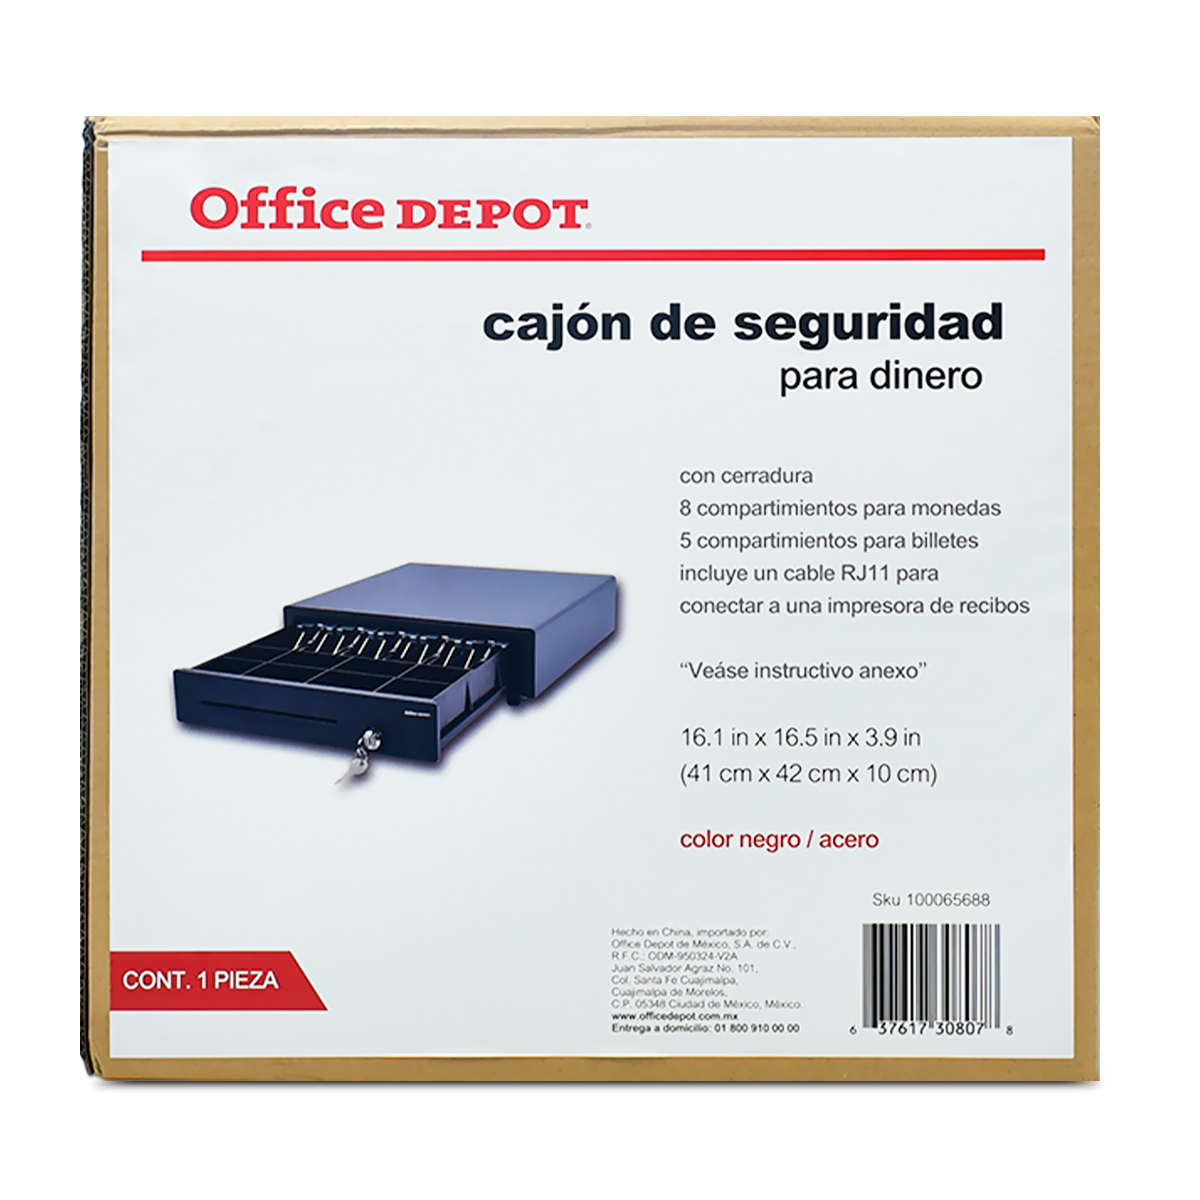 CAJÓN PARA DINERO OD G-4142 NG | Office Depot Mexico